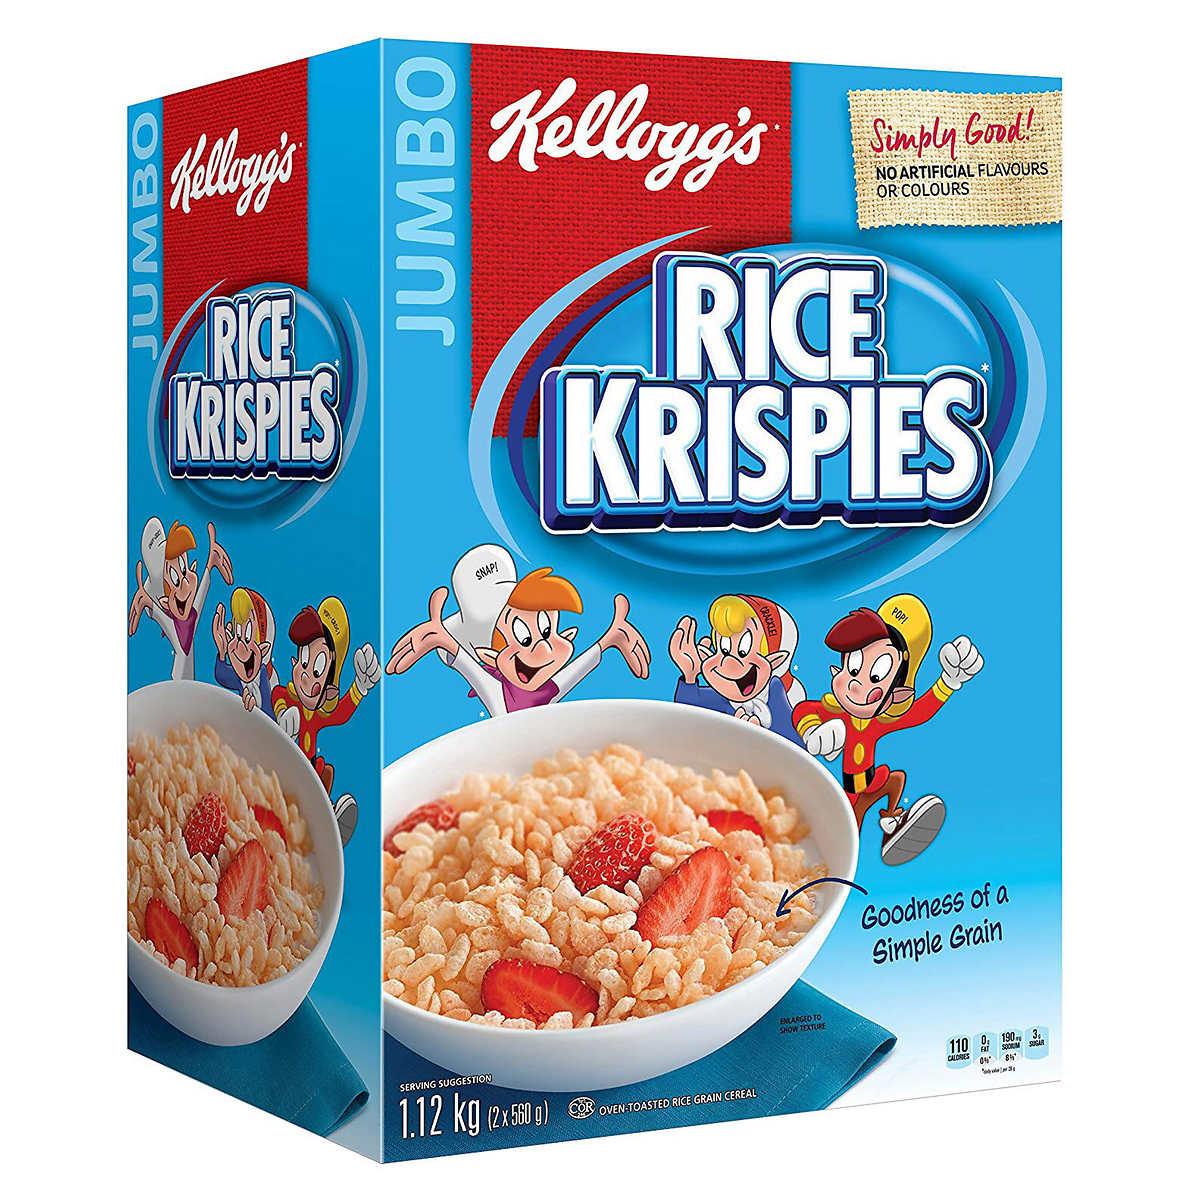 Kellogg's - Boite de céréales Rice Krispies de 1.12 kg - Deliver